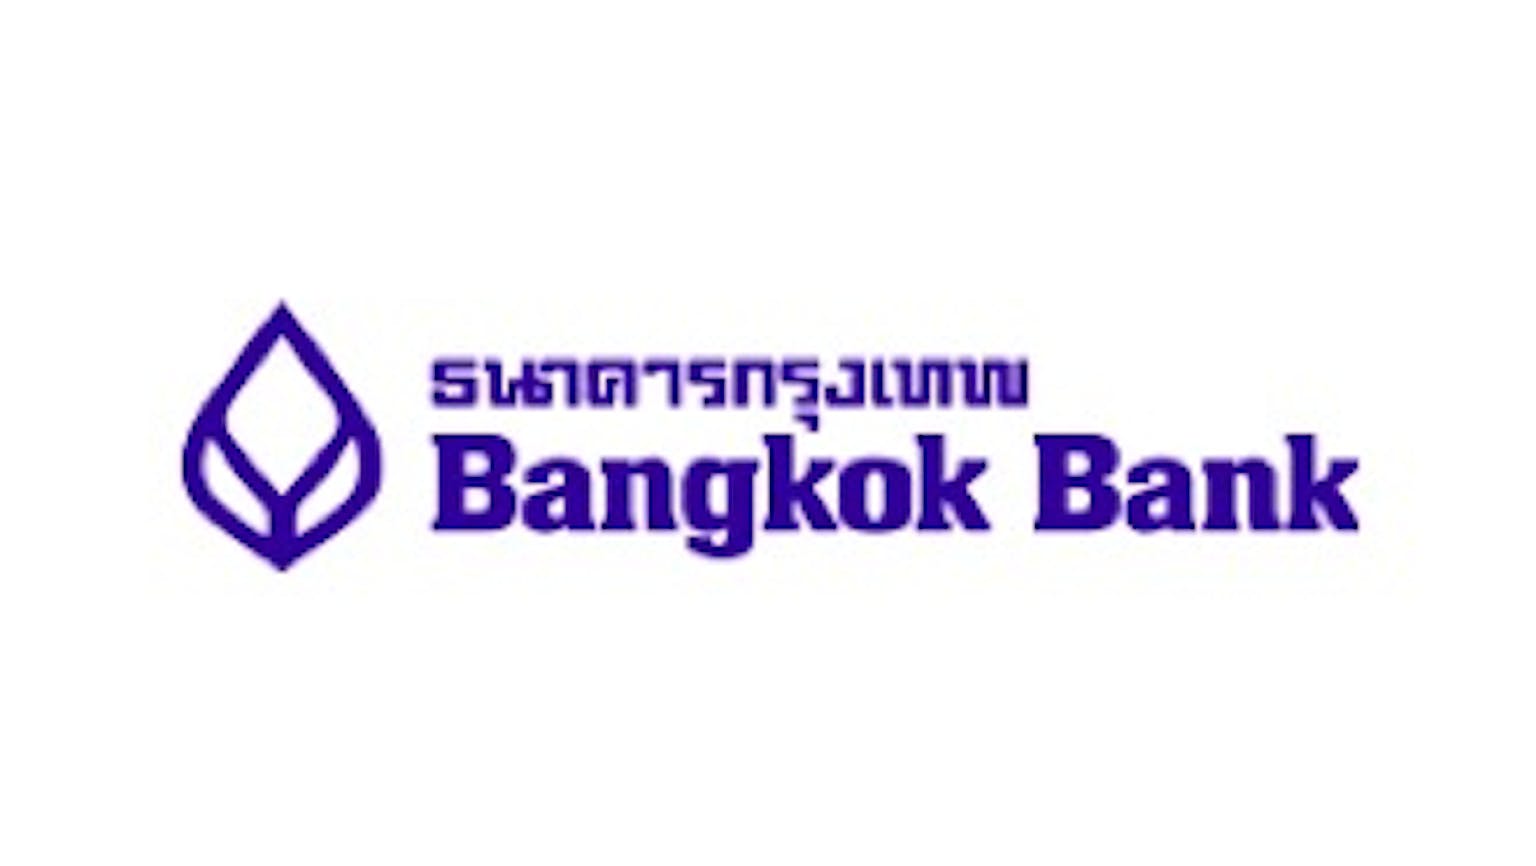 บัญชีเงินฝากสะสมทรัพย์  Bangkokbank